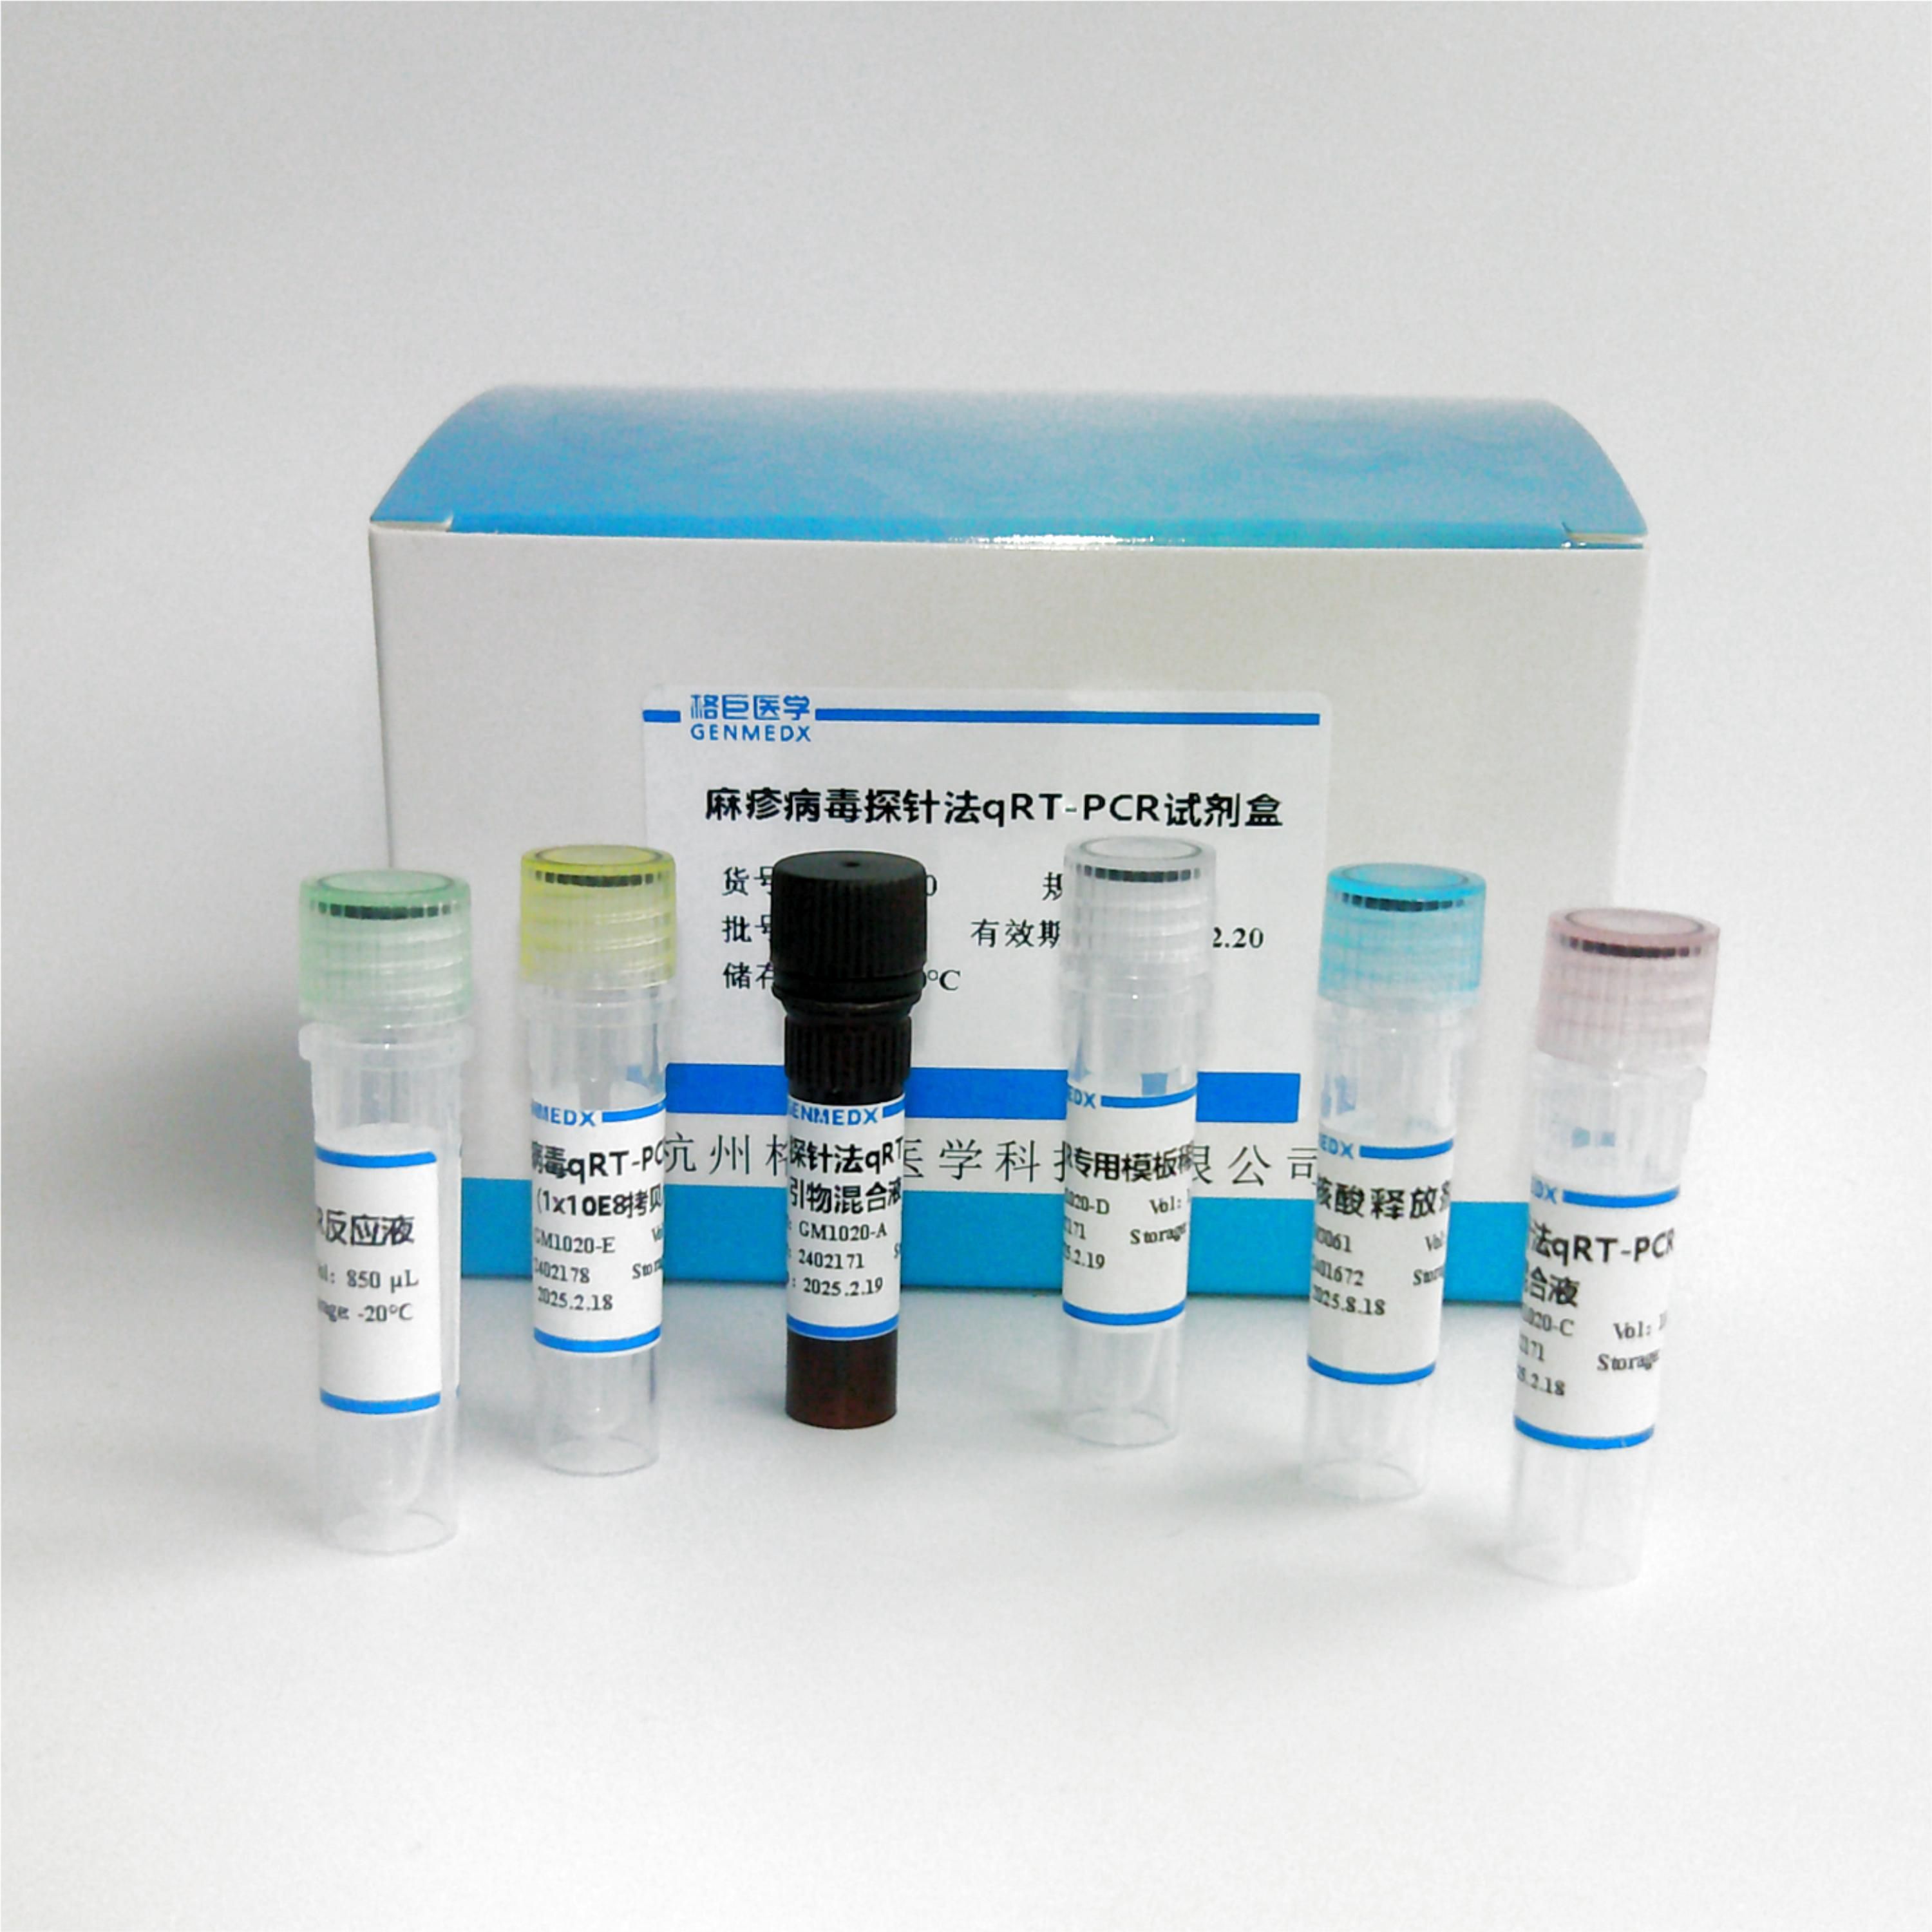 牛白血病病毒探针法荧光定量RT-PCR试剂盒